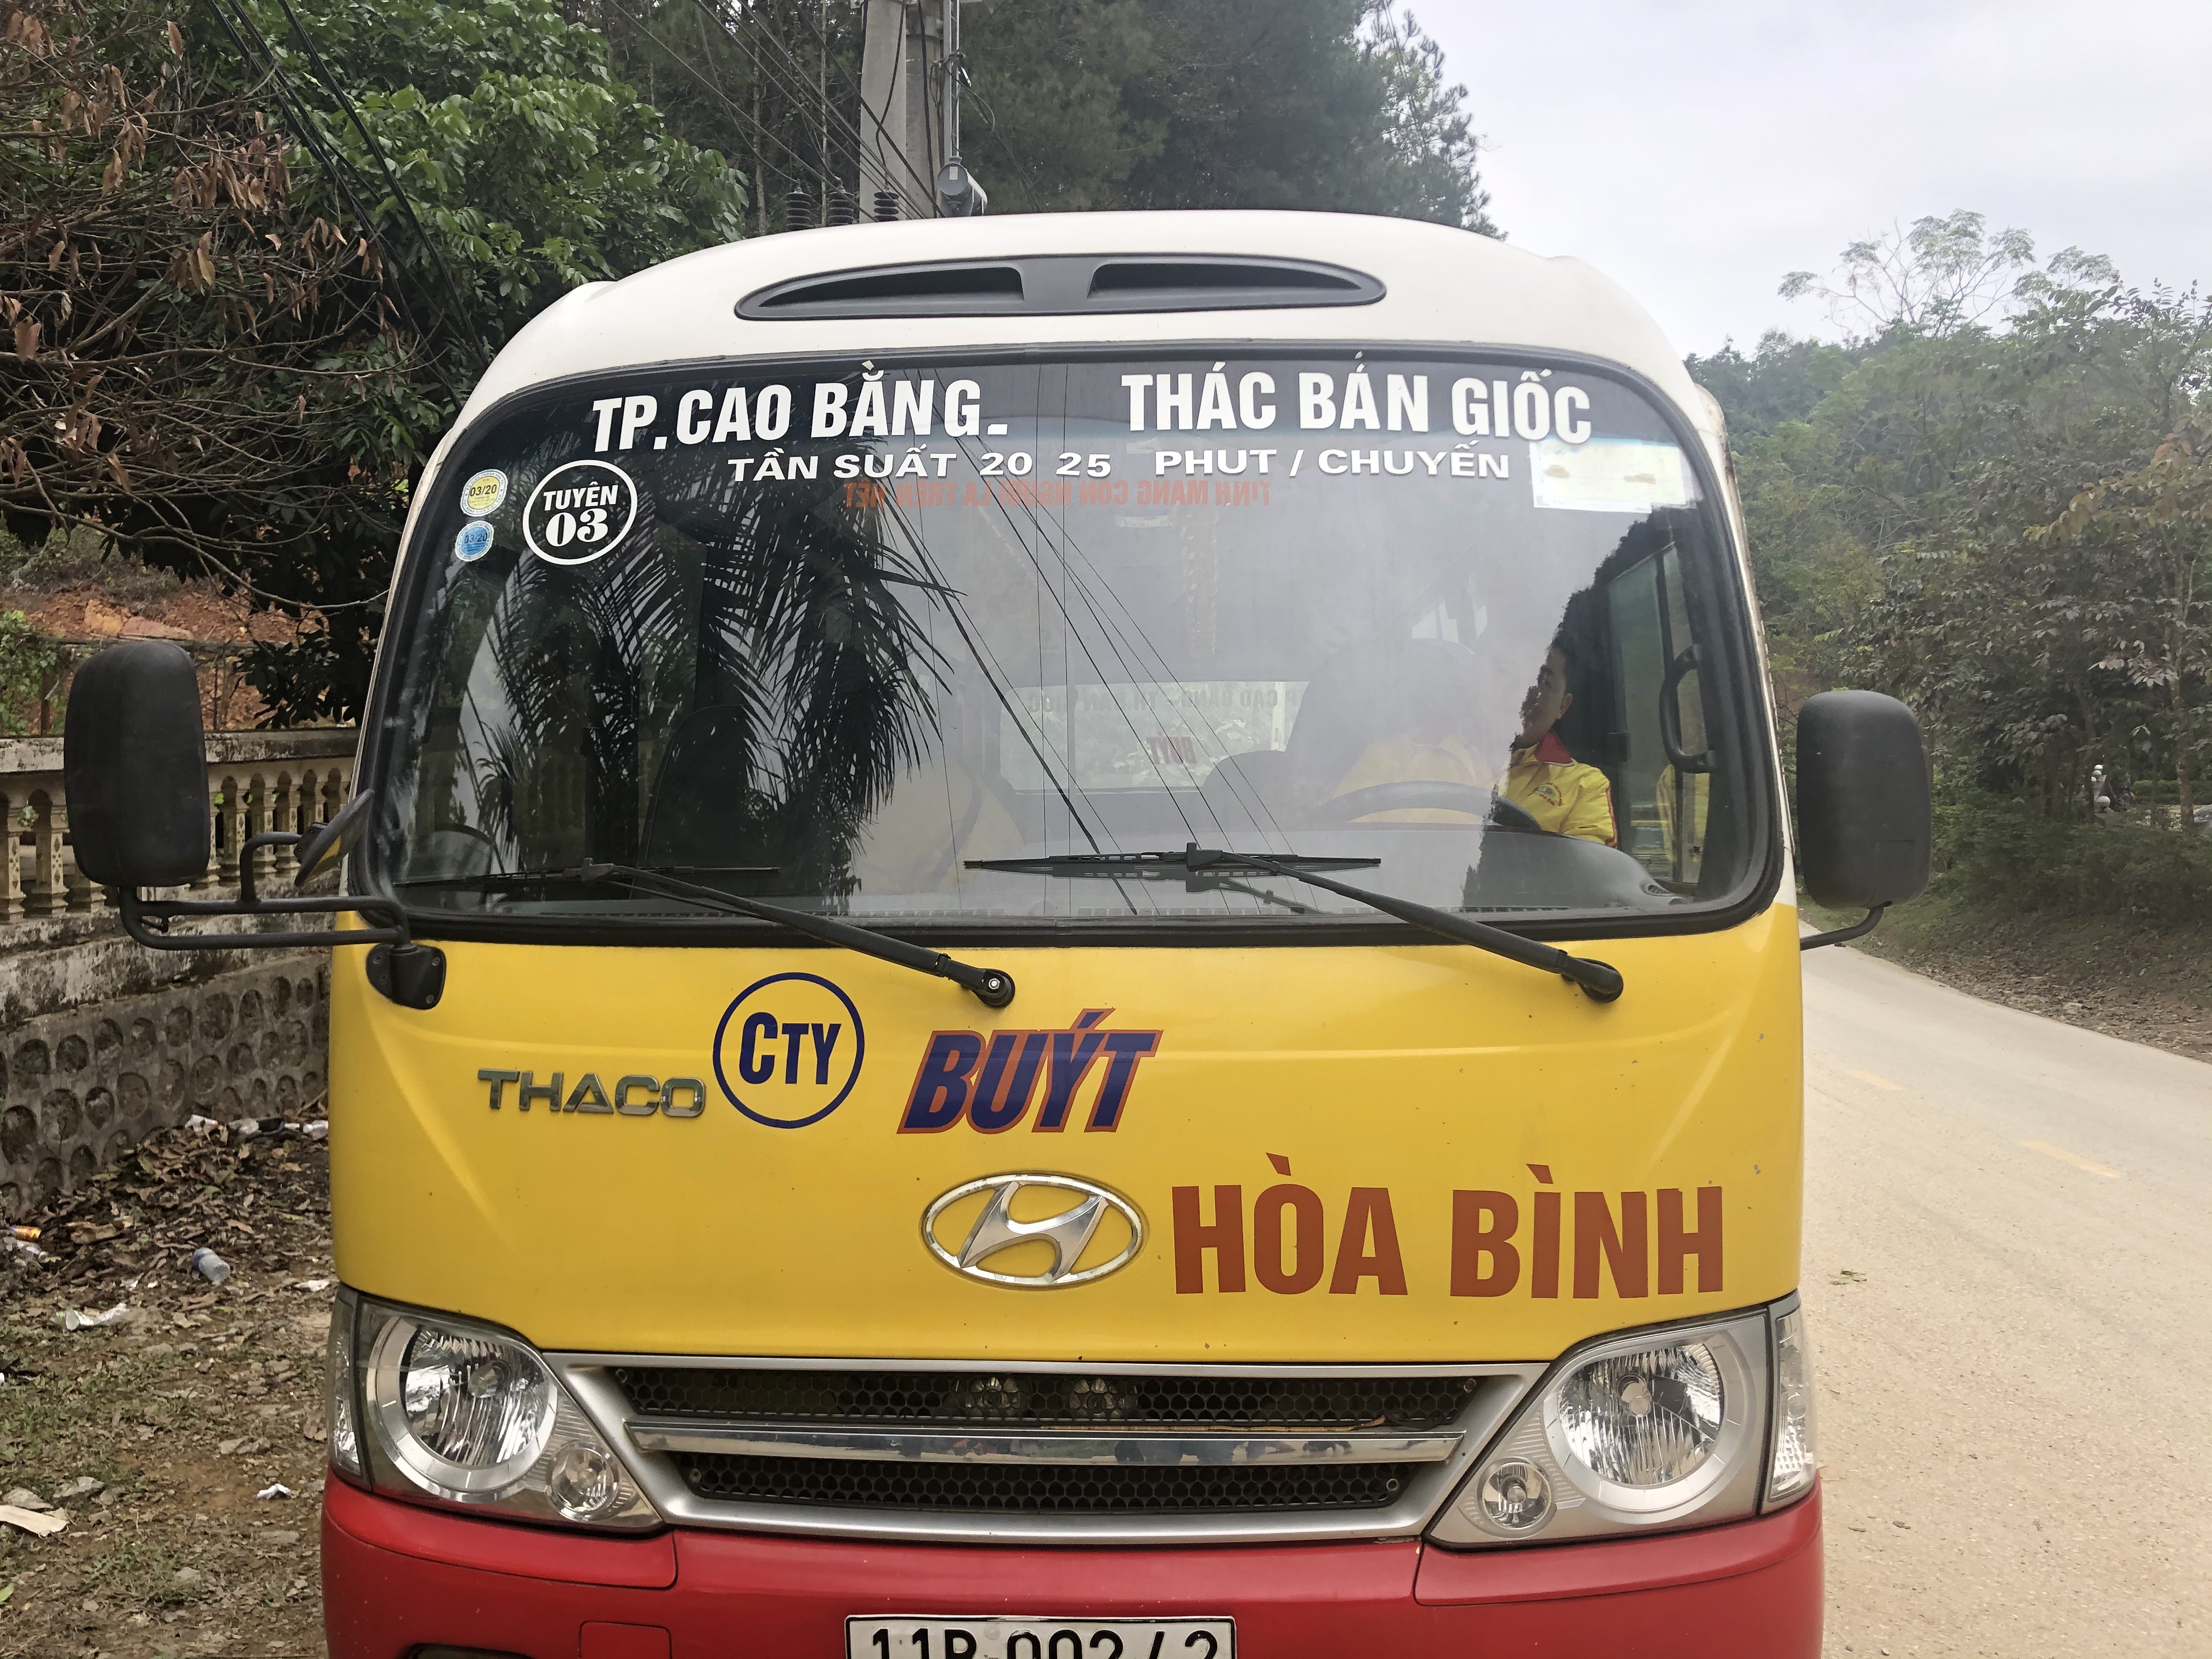 Bus Cao Bang - Ban Gioc